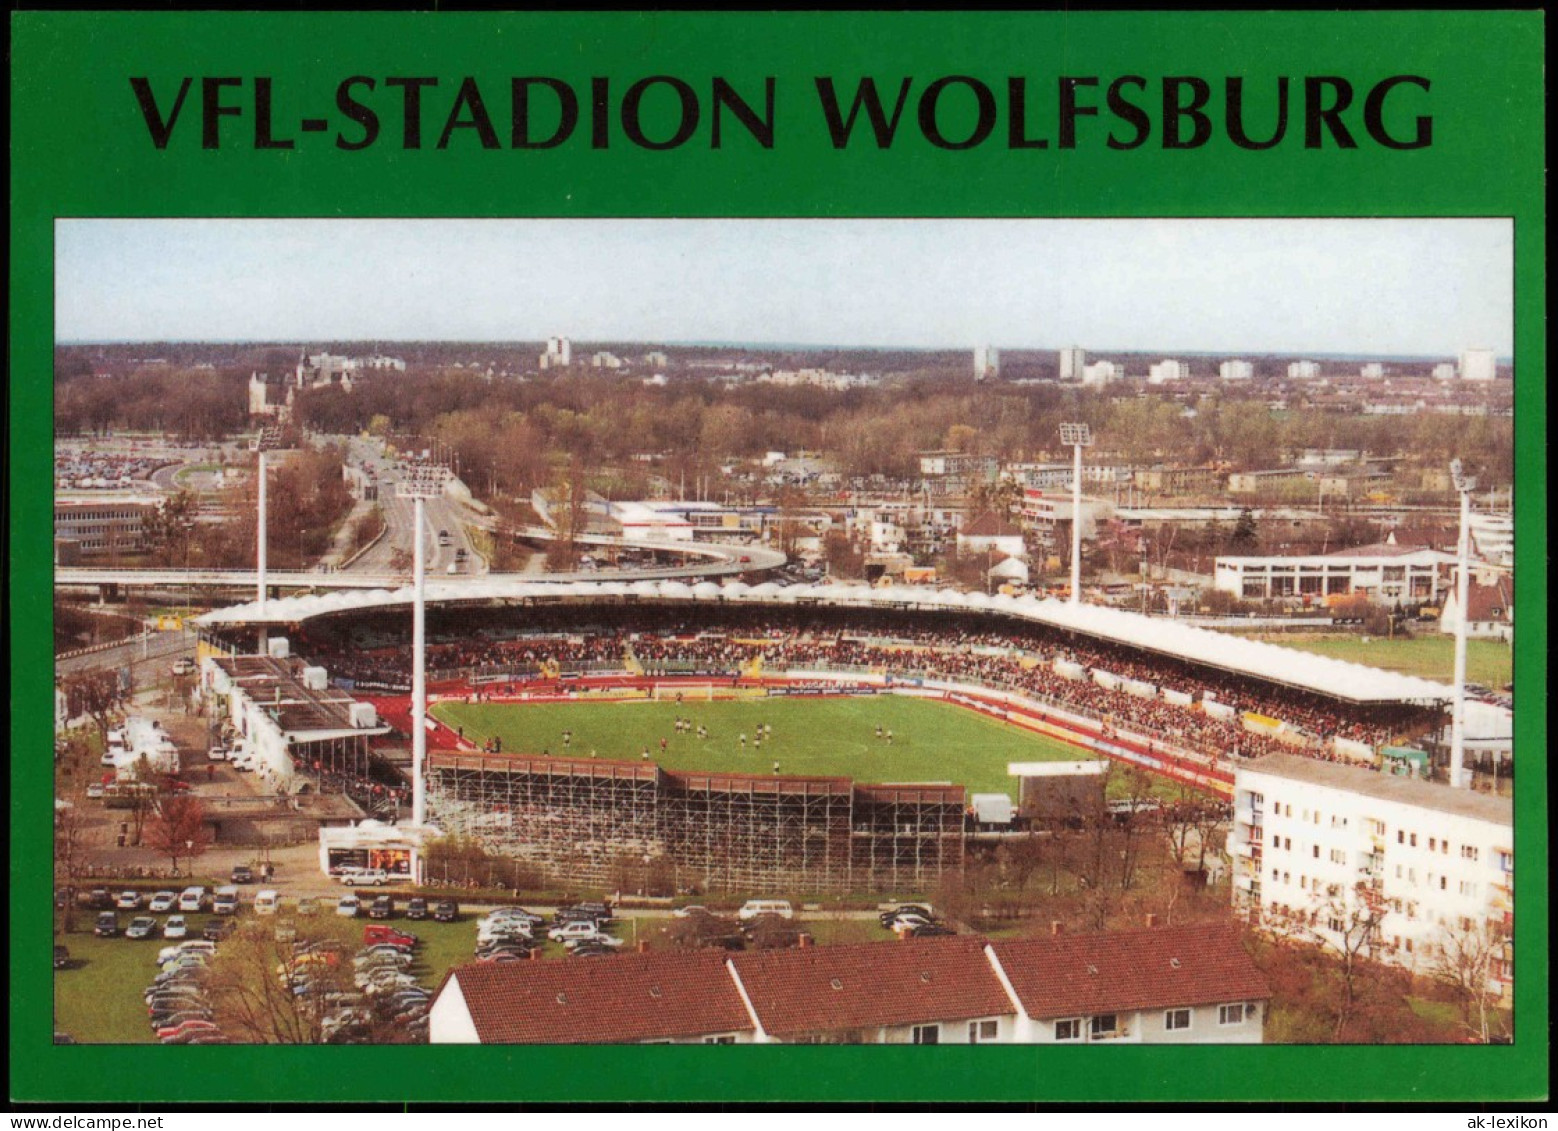 Ansichtskarte Wolfsburg VFL-STADION WOLFSBURG Football Stadium 2001/2002 - Wolfsburg